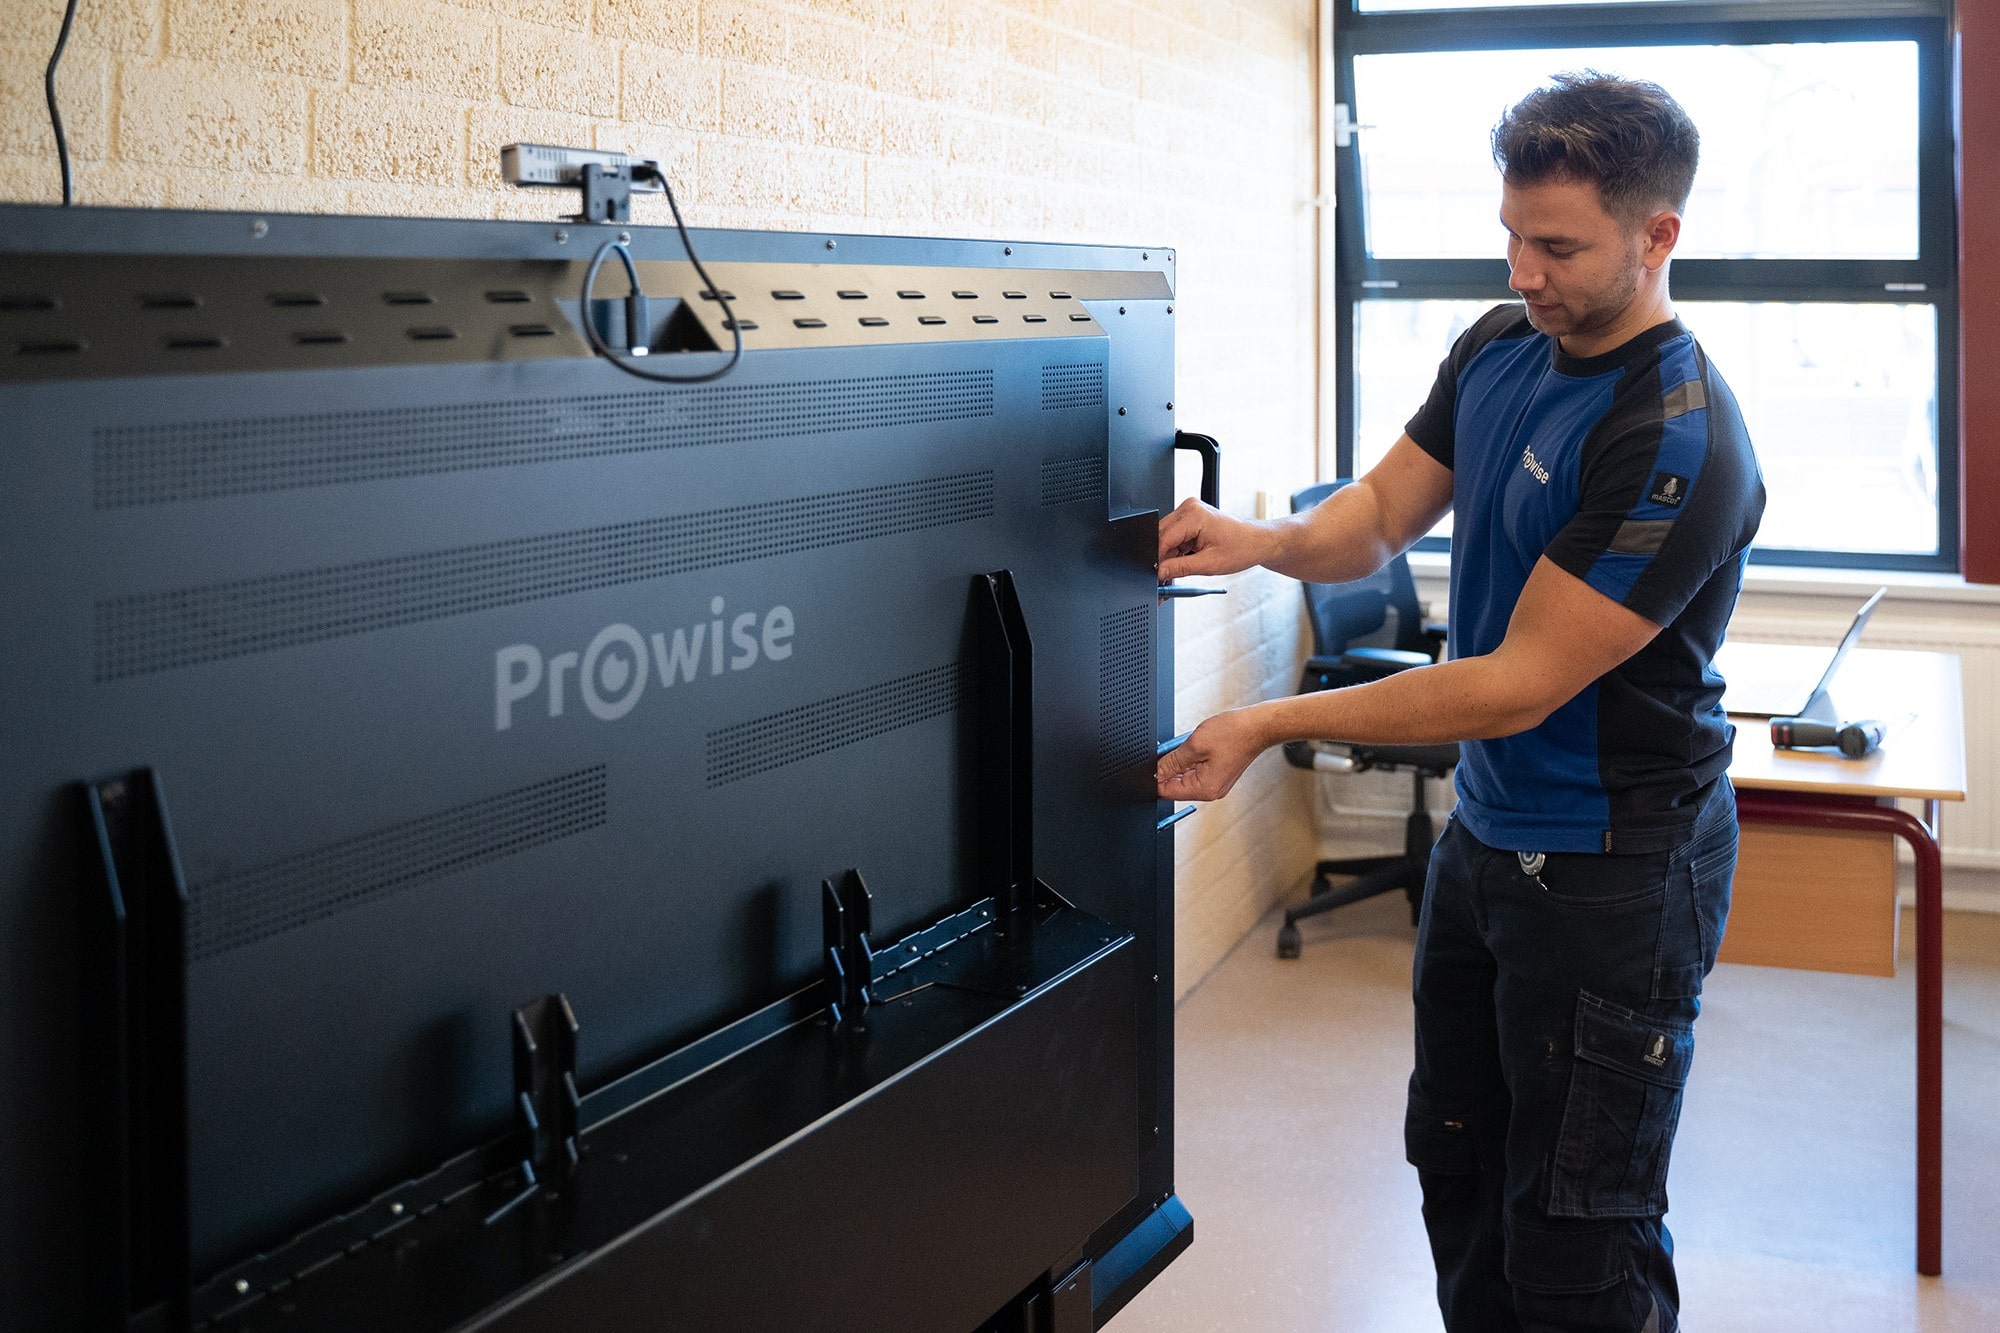 Deutsche-Politik-News.de | Prowise-Techniker installiert interaktive Tafel in einem Klassenraum